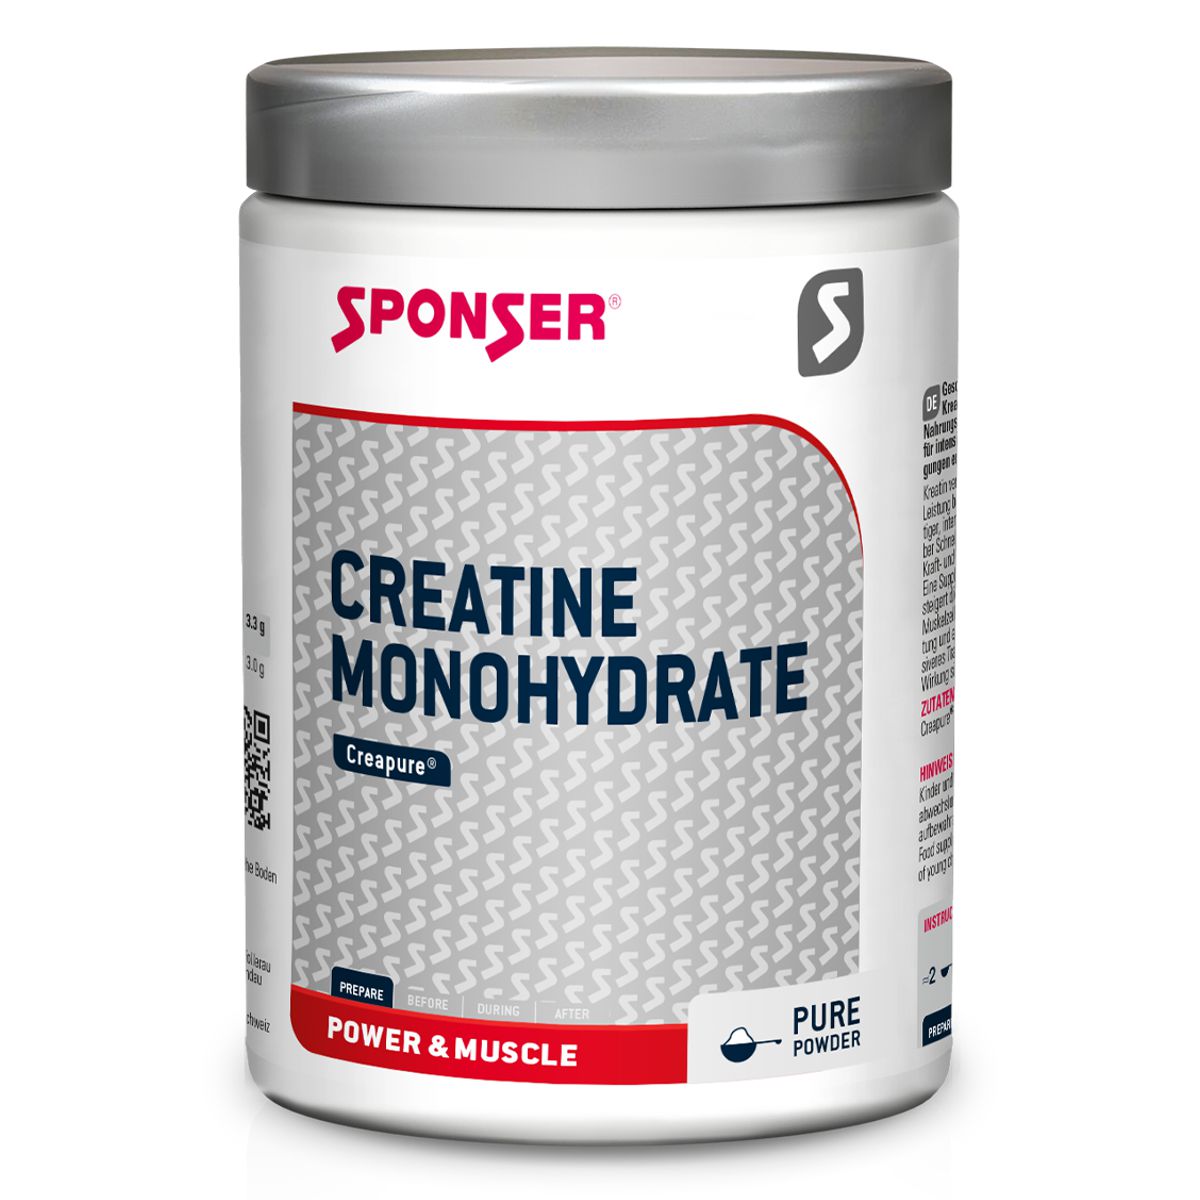 Sponser_Creatine_Monohydrate_Pulver_kaufen